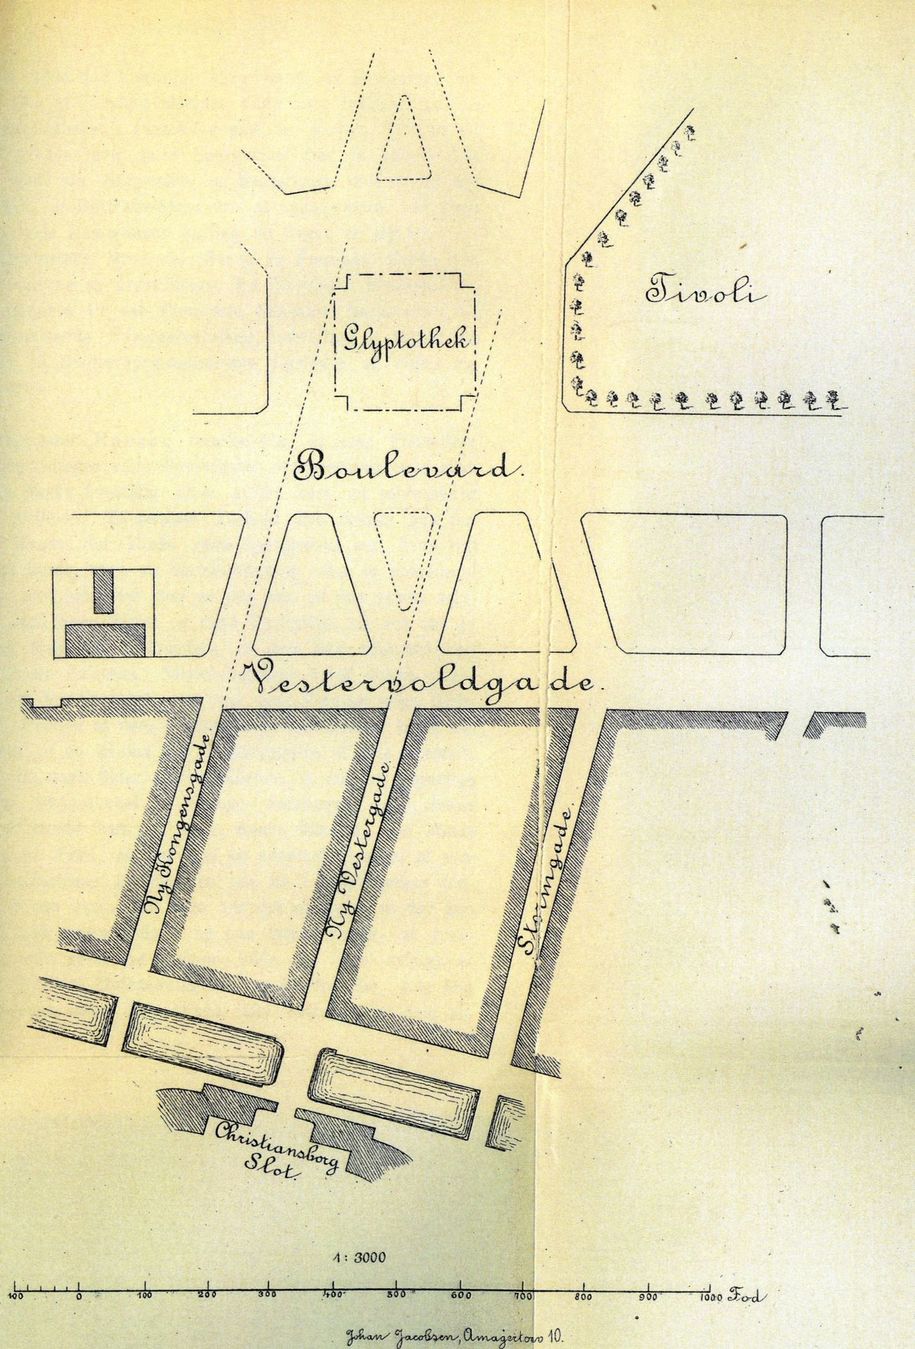 Glyptotekets påtænkte placering på grunden bag Tivoli gengivet i referatet af Borgerrepræsentationens møde 23. september 1889